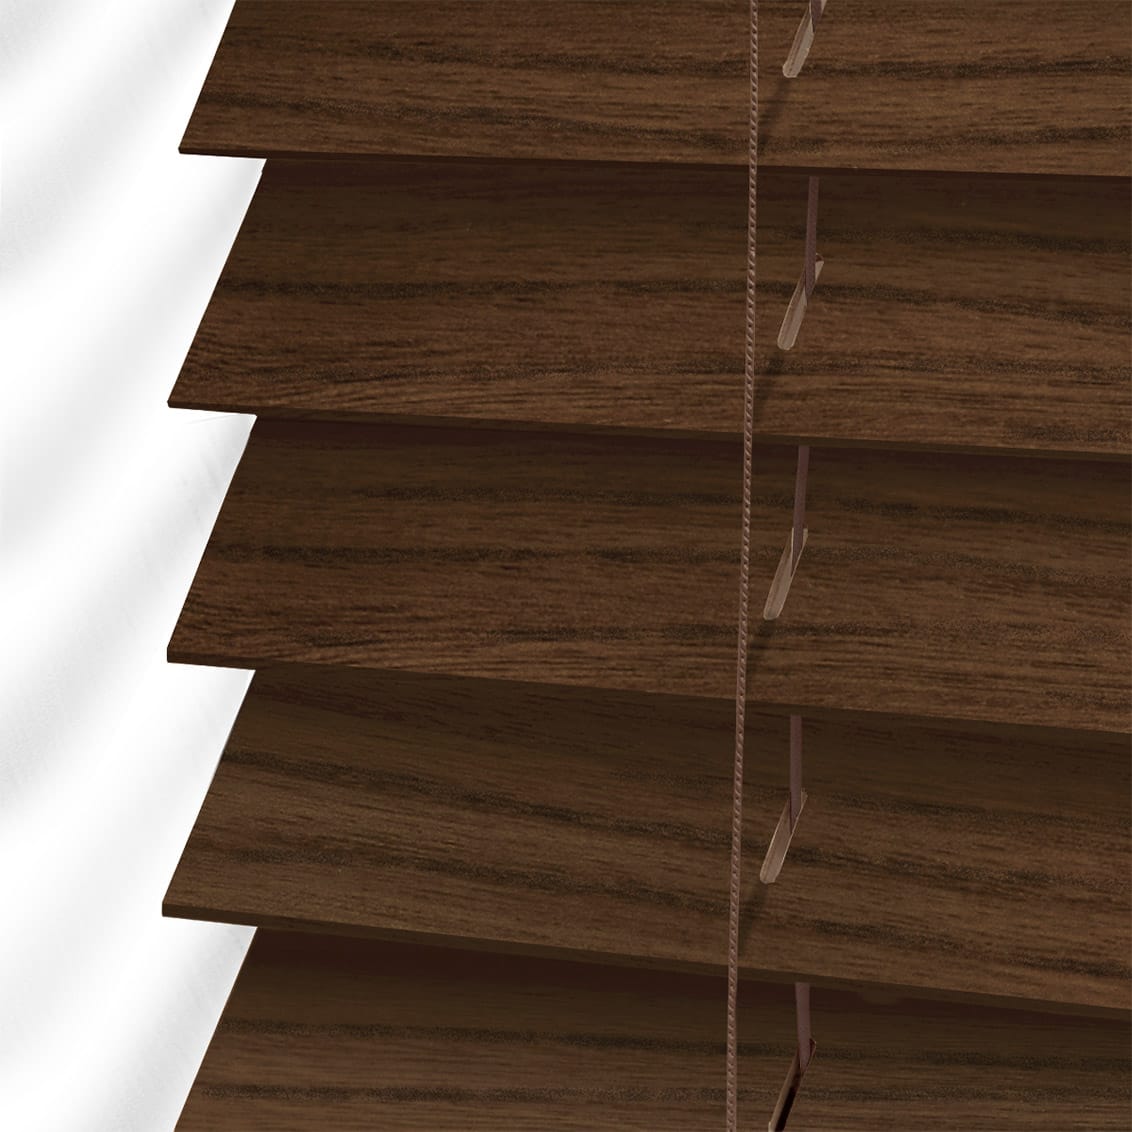 Rèm gỗ cao cấp với hệ thống dây cố định chắc chắn